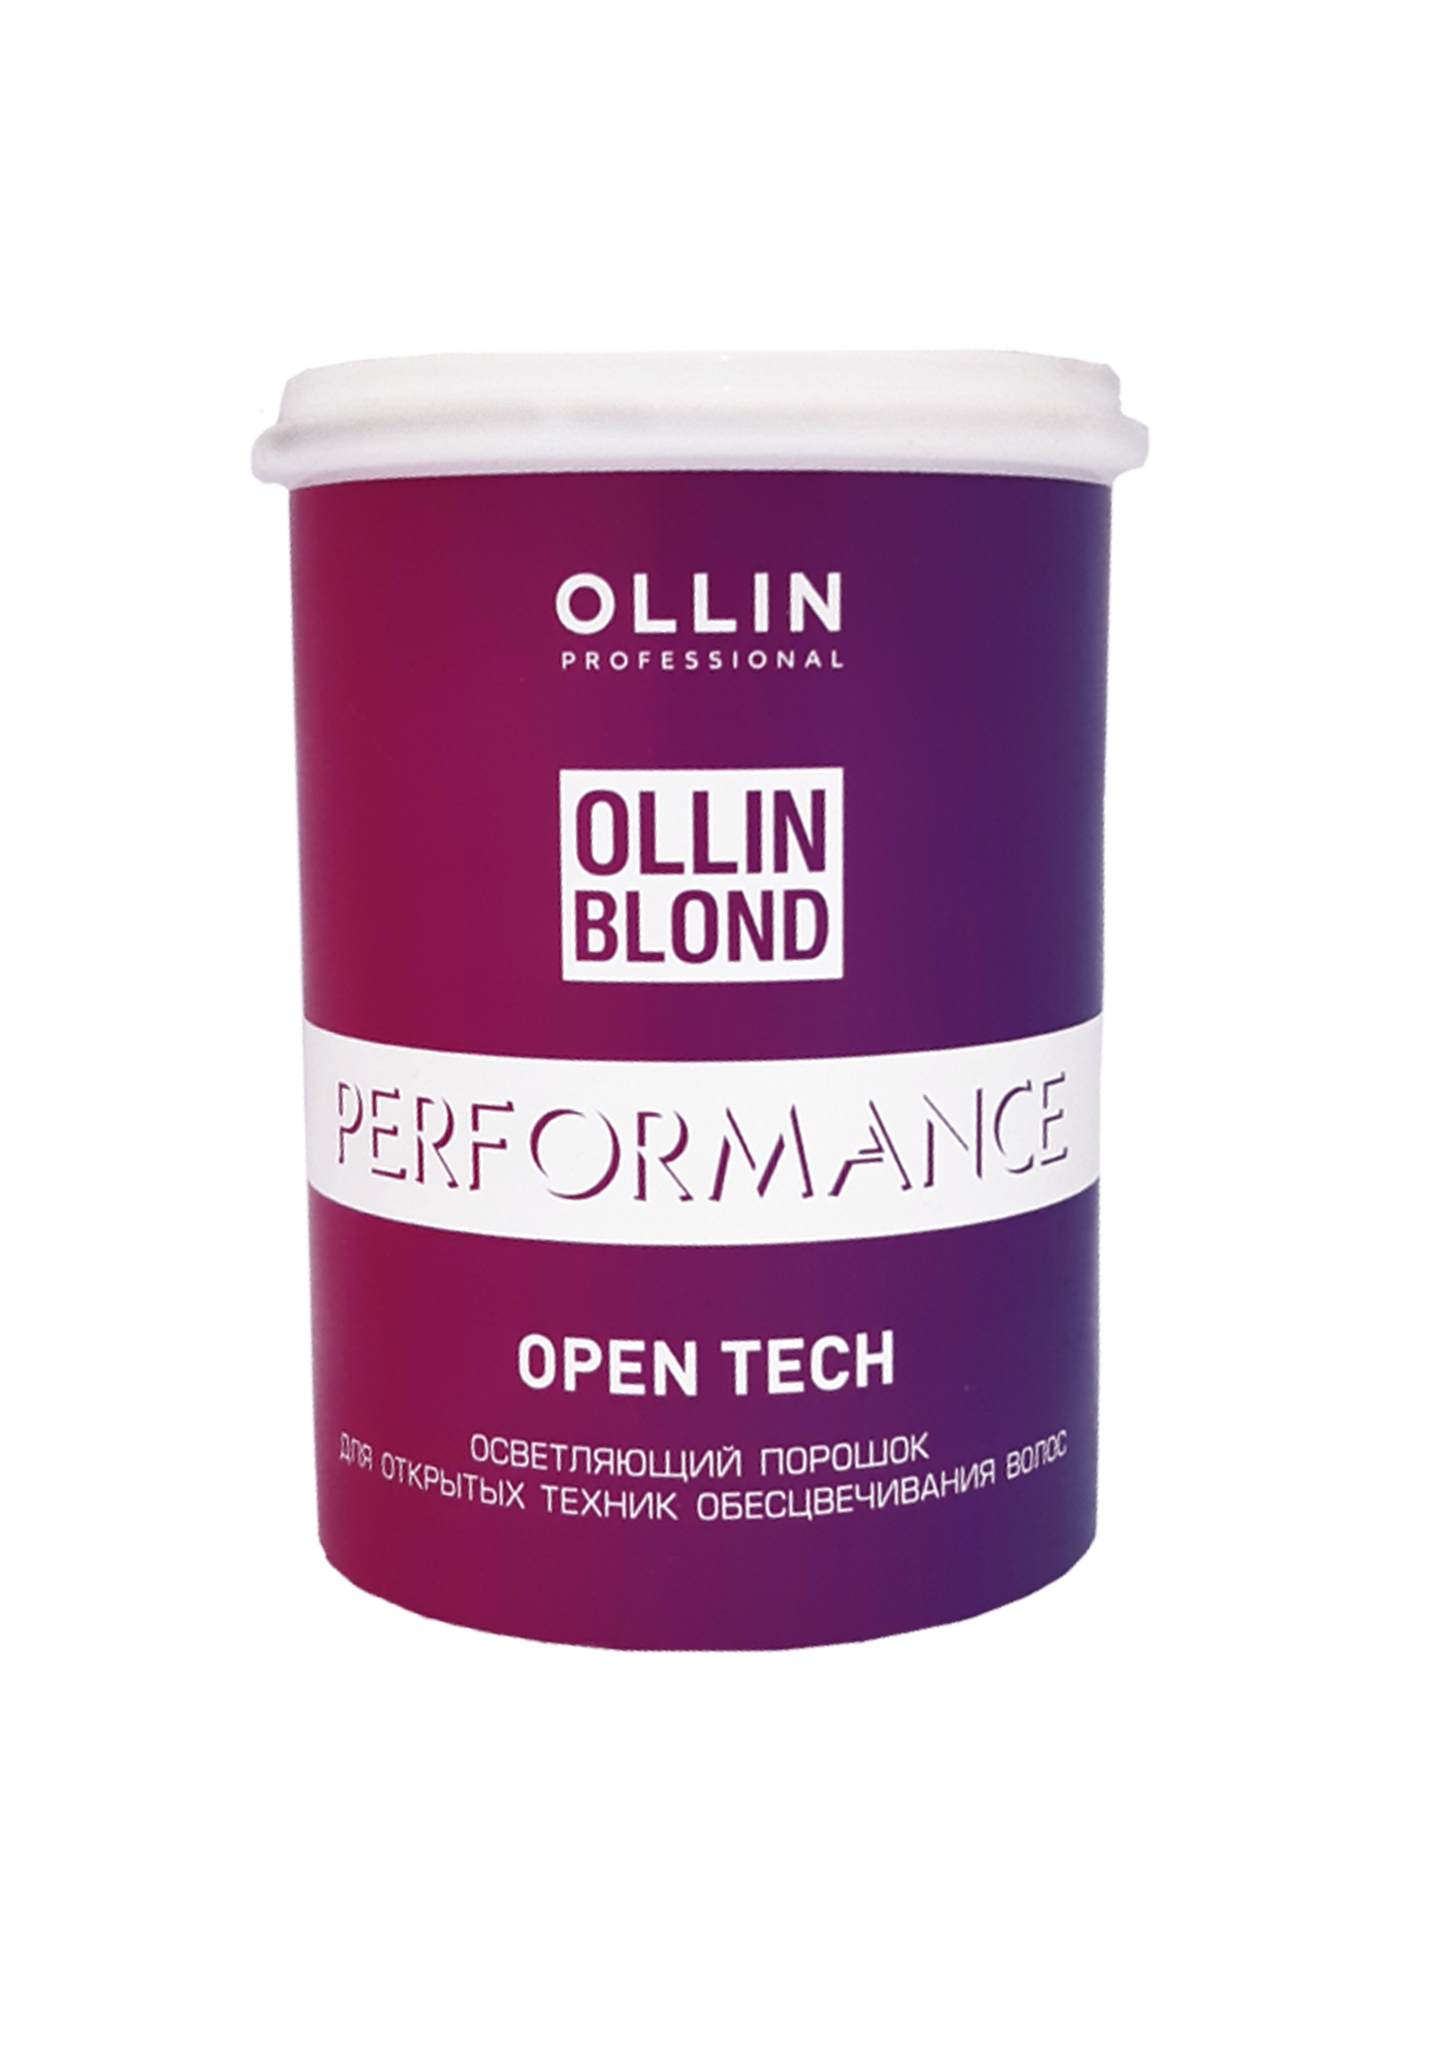 Осветляющий порошок Open Tech Performance Ollin Professional, 500 гр как запомнить легко и надолго 75 лучших техник от мастера по запоминанию запп б